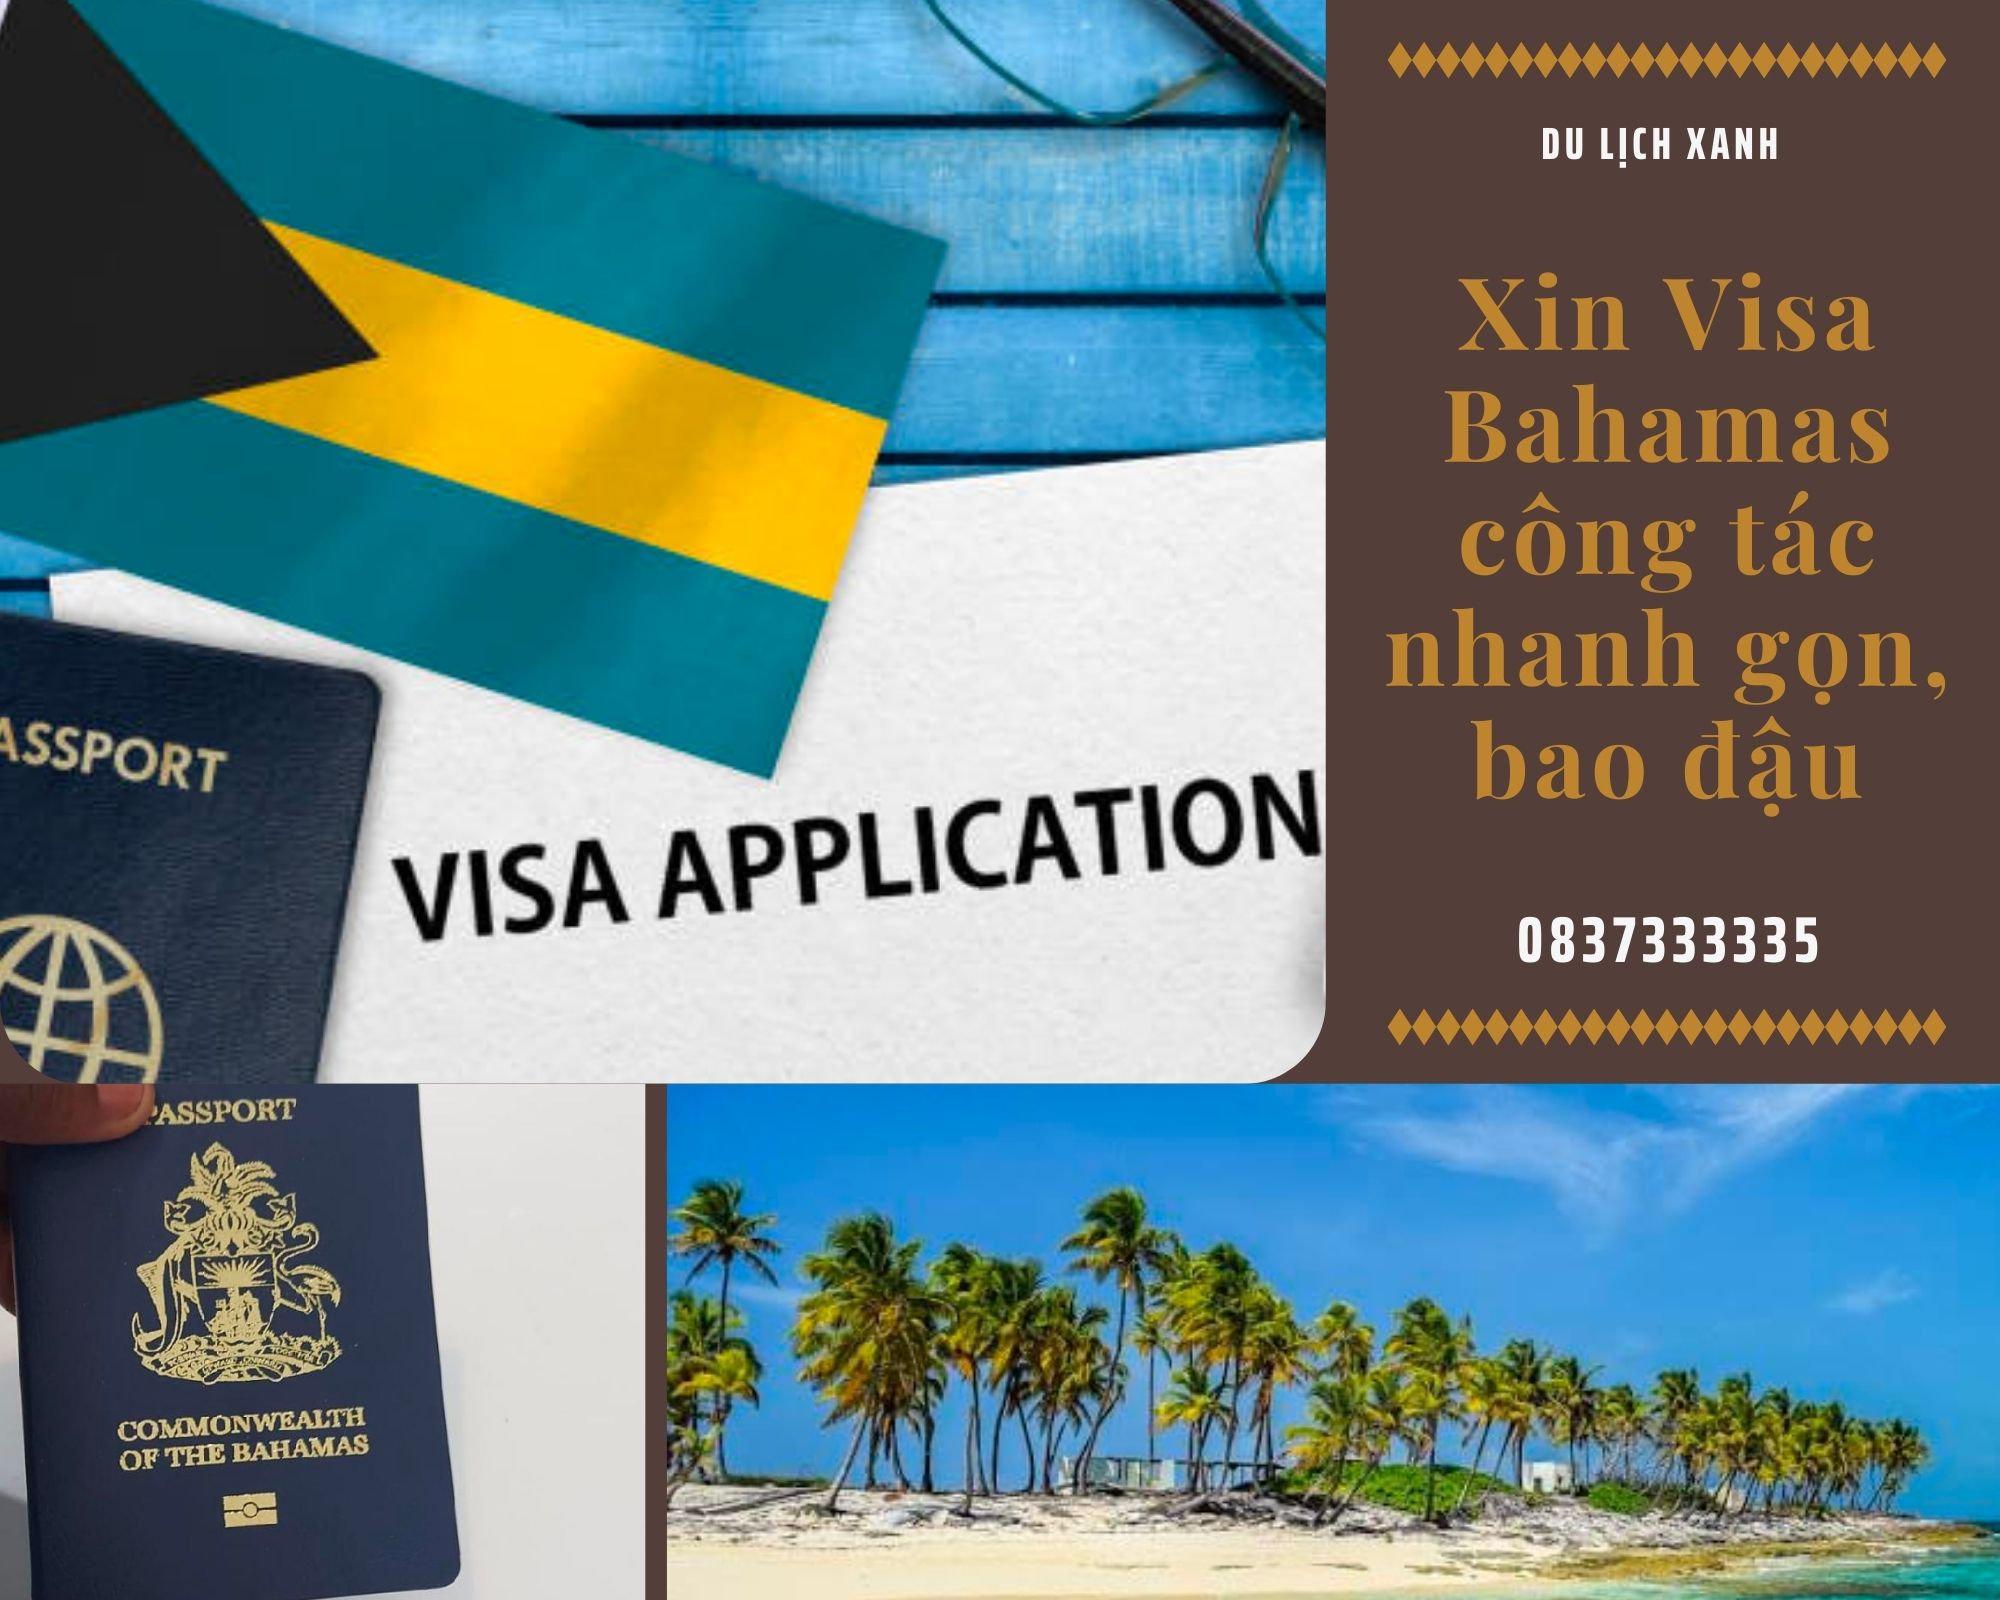 Dịch vụ xin Visa Bahamas công tác uy tín, giá rẻ, nhanh gọn